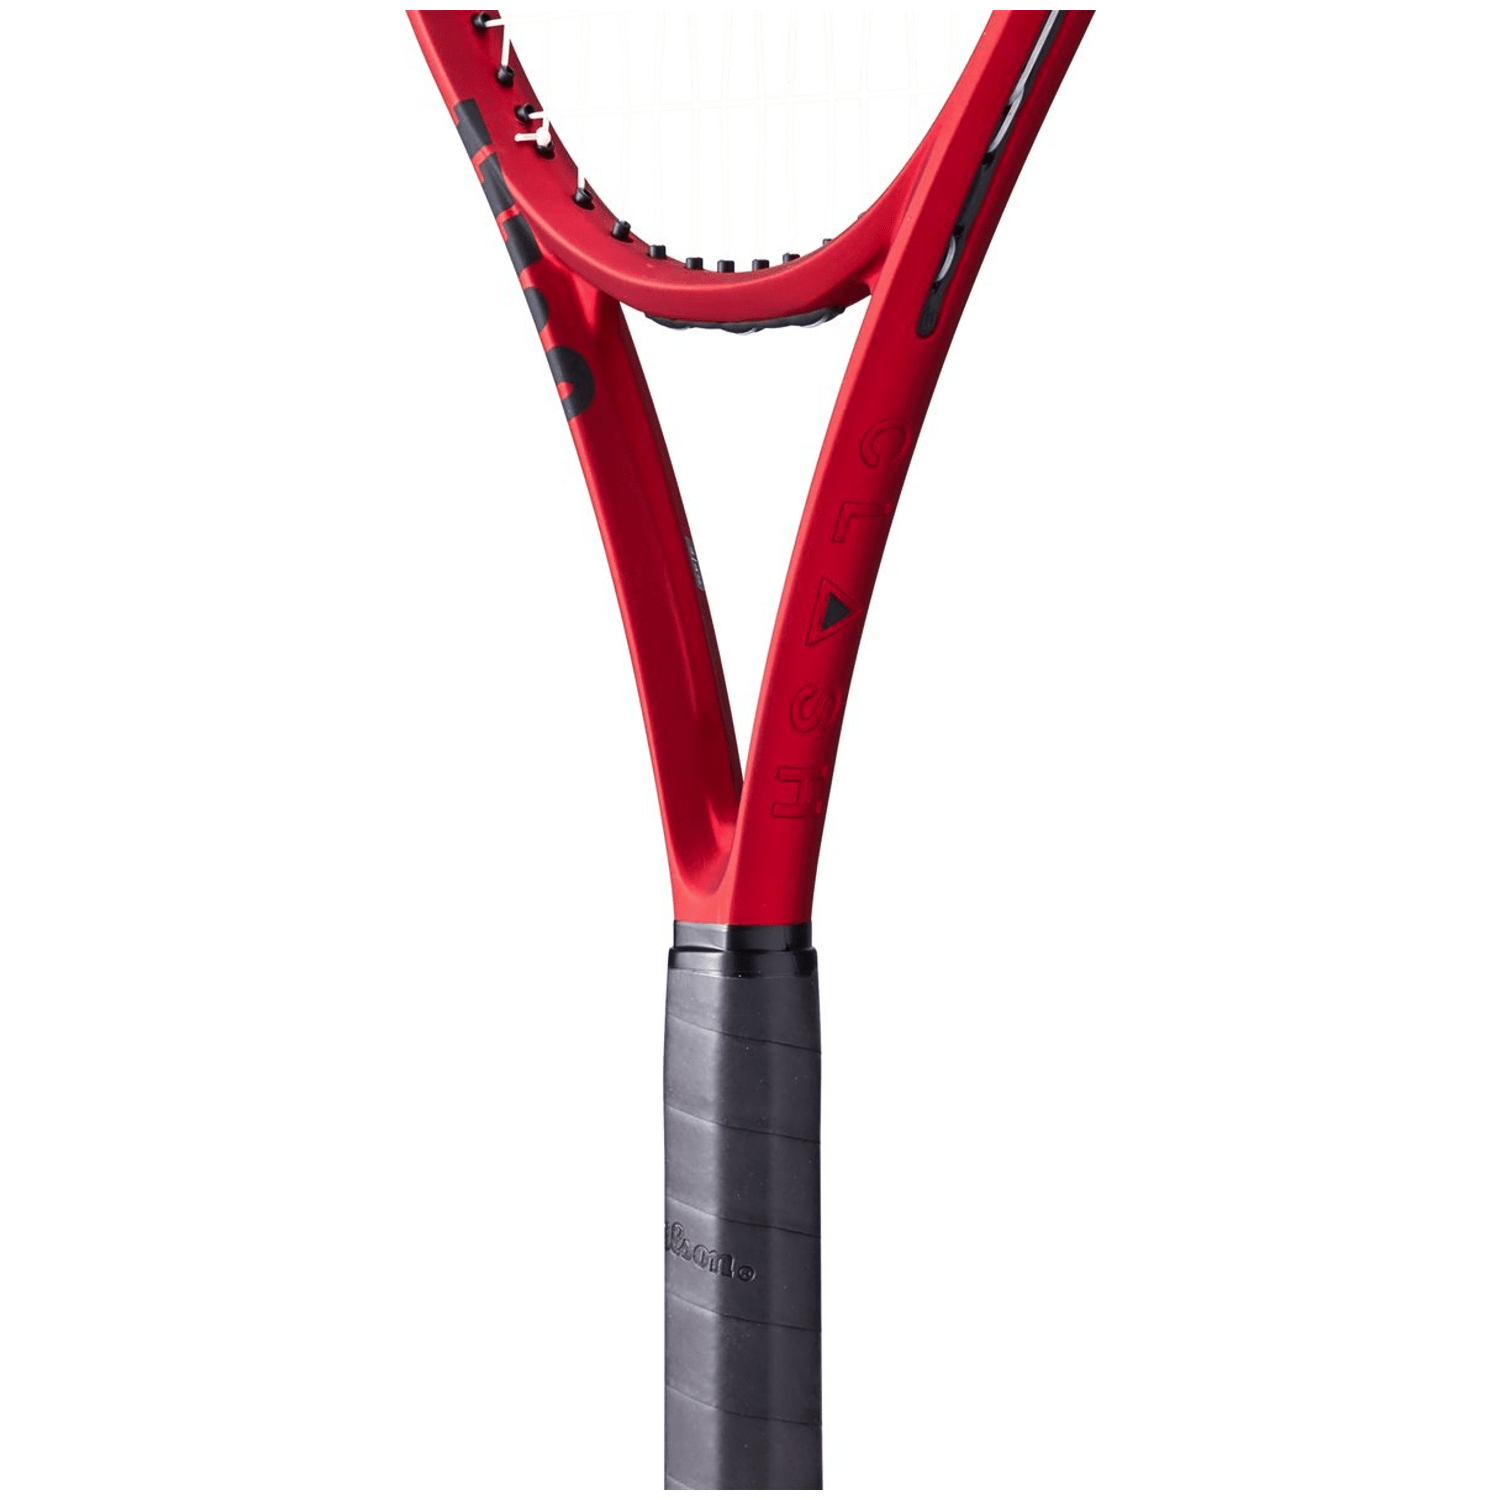 Wilson Clash 100 V2.0 FRM Tennisschläger